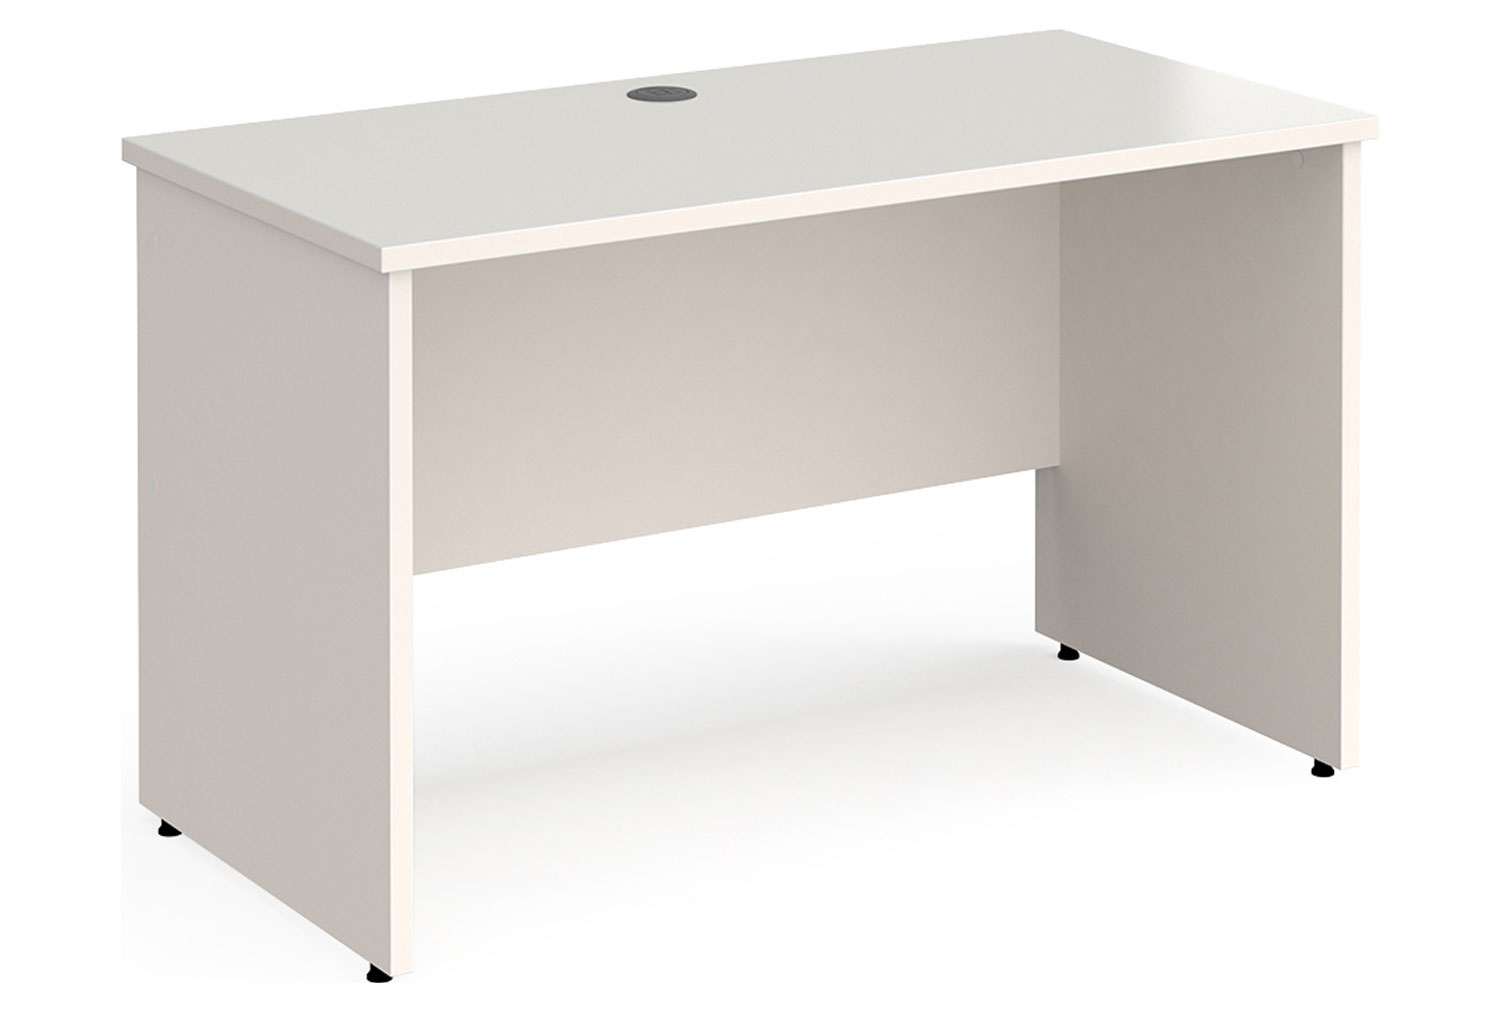 All White Panel End Narrow Rectangular Office Desk, 120w60dx73h (cm)